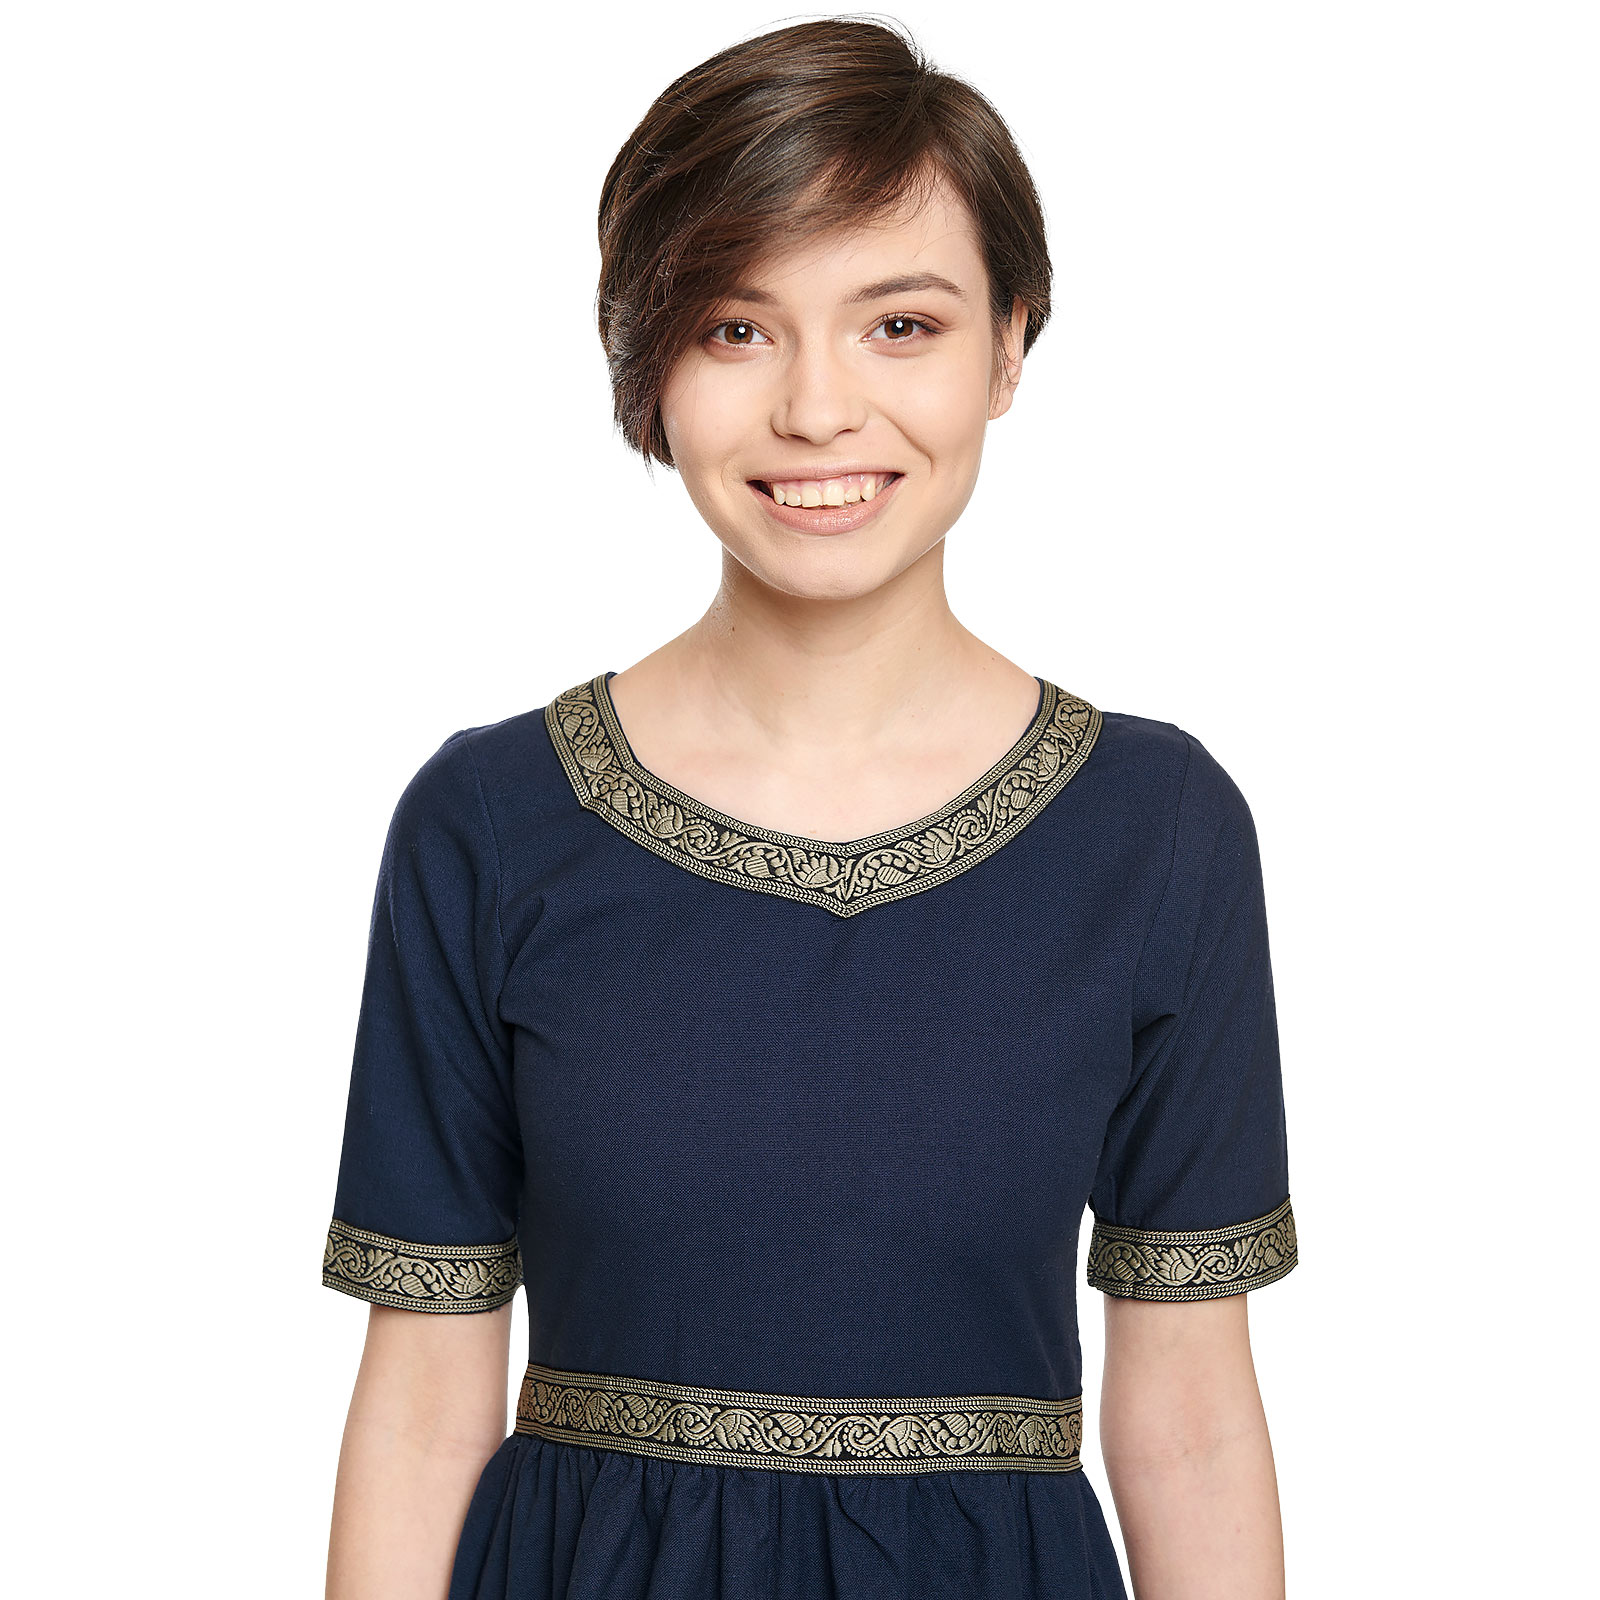 Mittelalter Kleid Ennlin mit Kurzarm blau